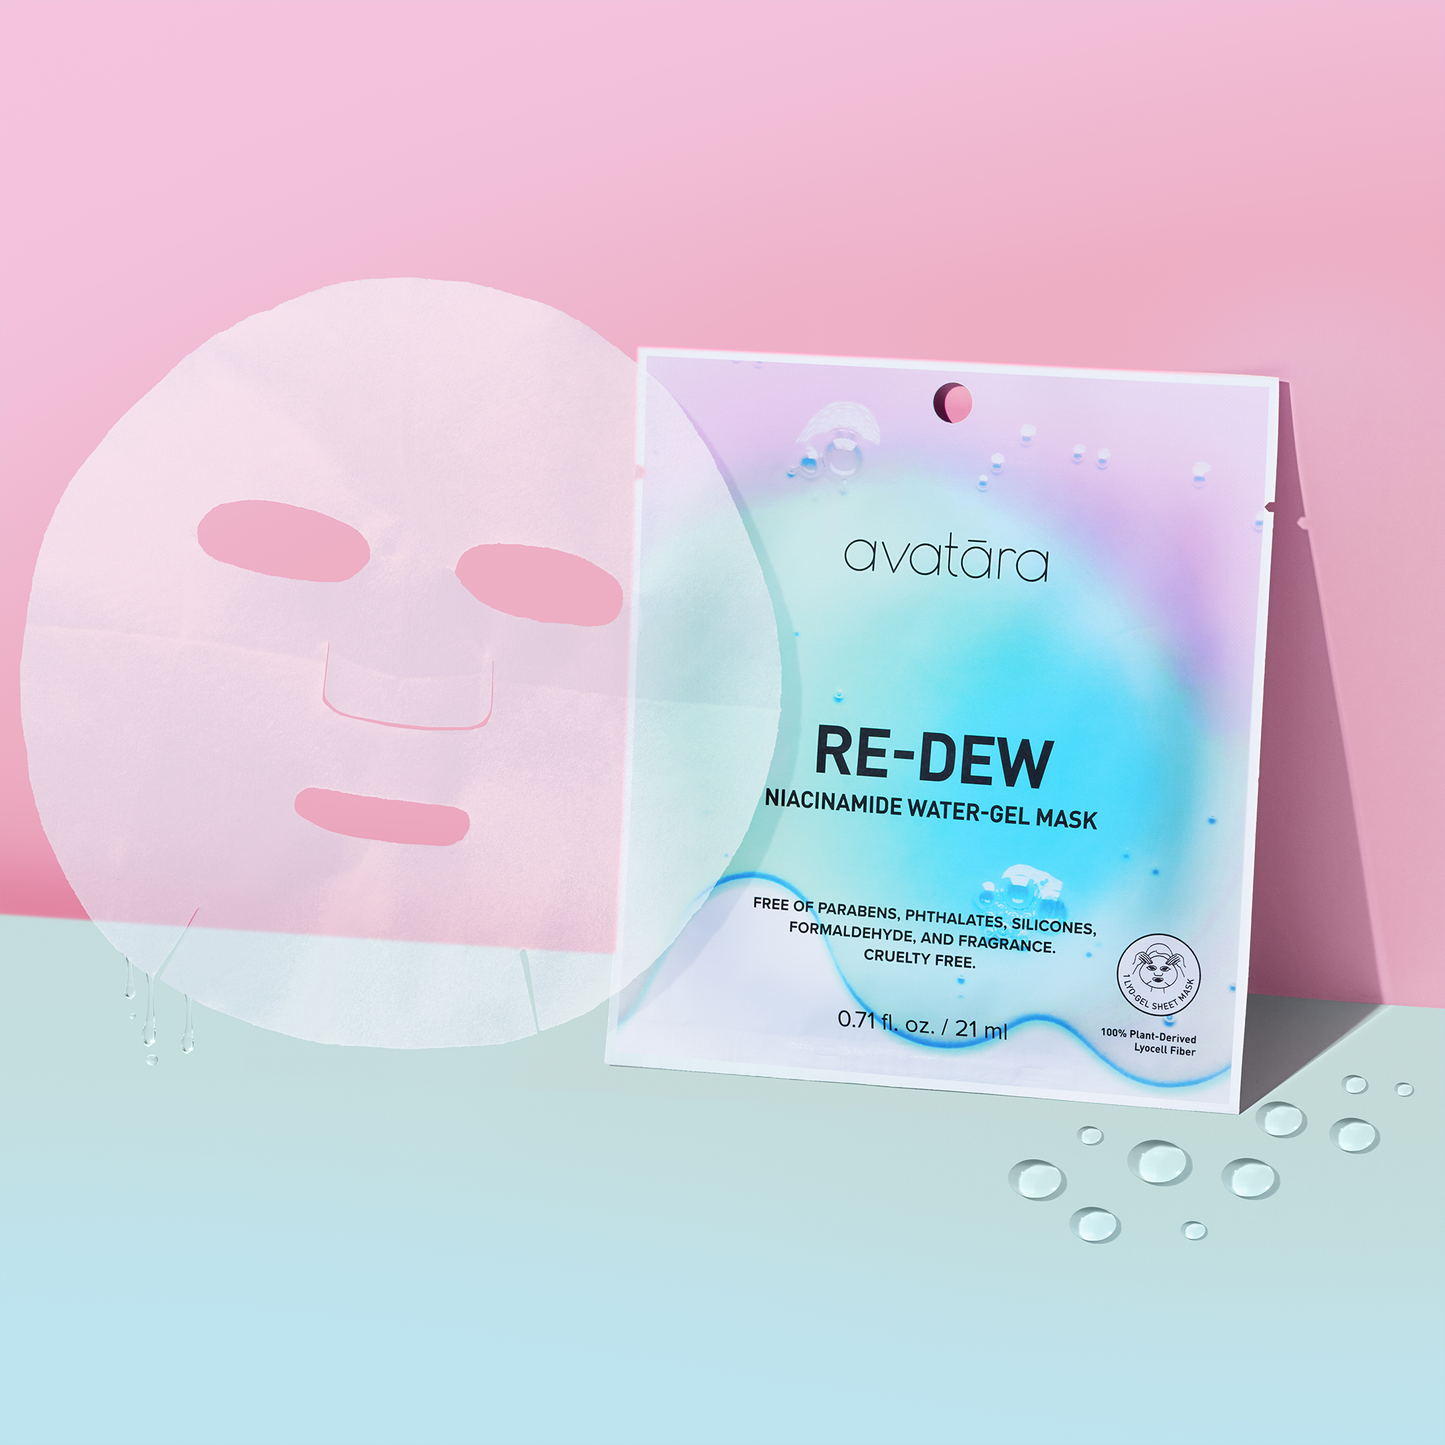 Re-Dew Niacinamide Water-Gel Mask